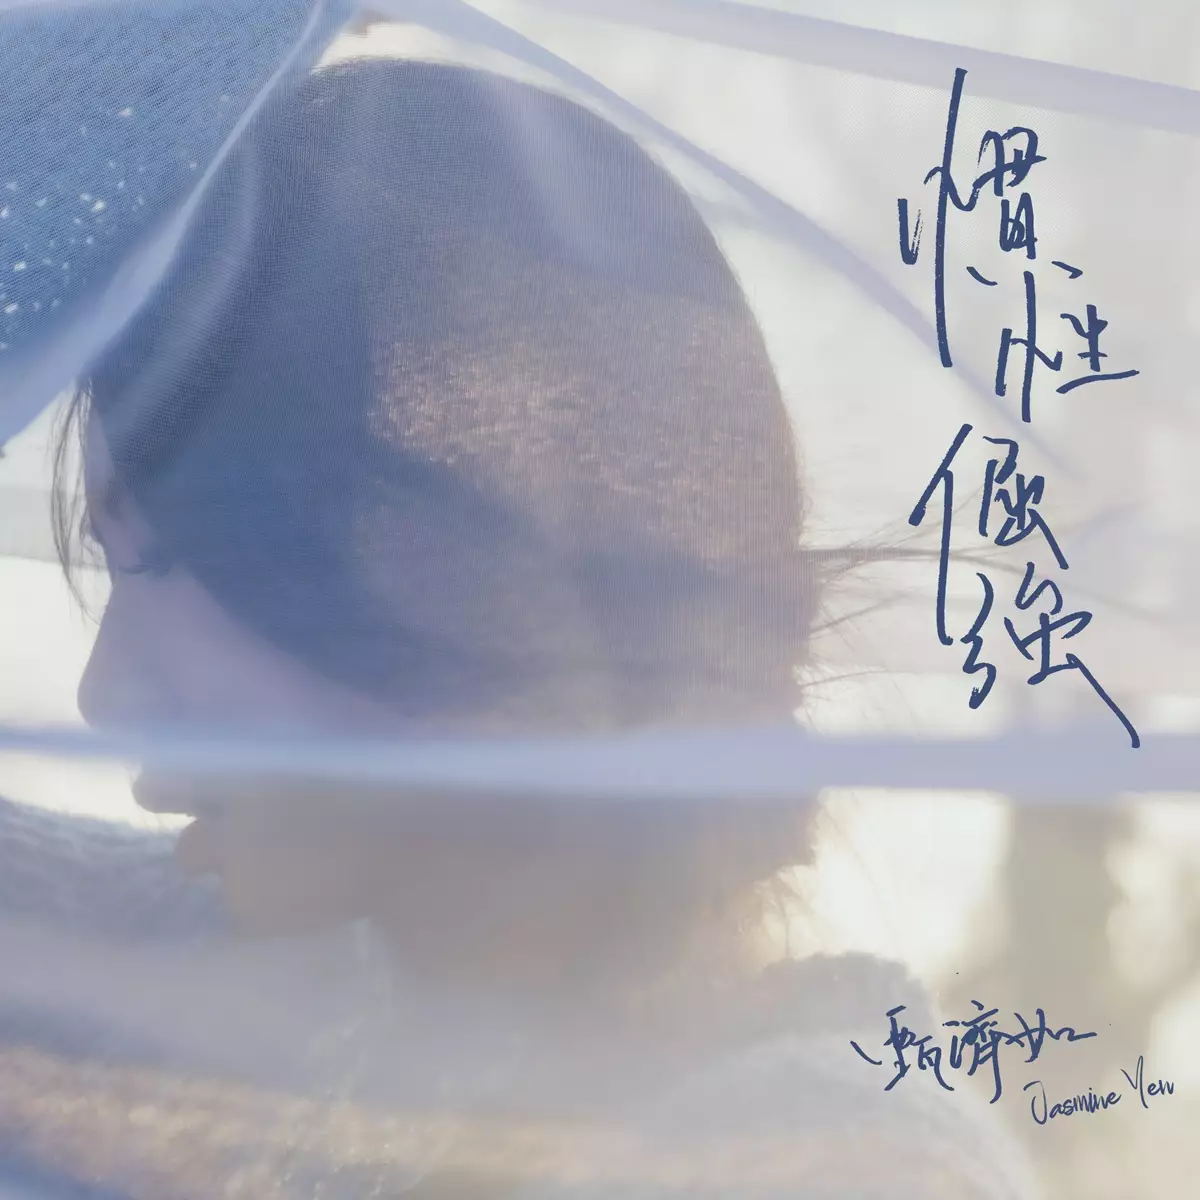 Jasmine推出首支全中文單曲《慣性倔強》。